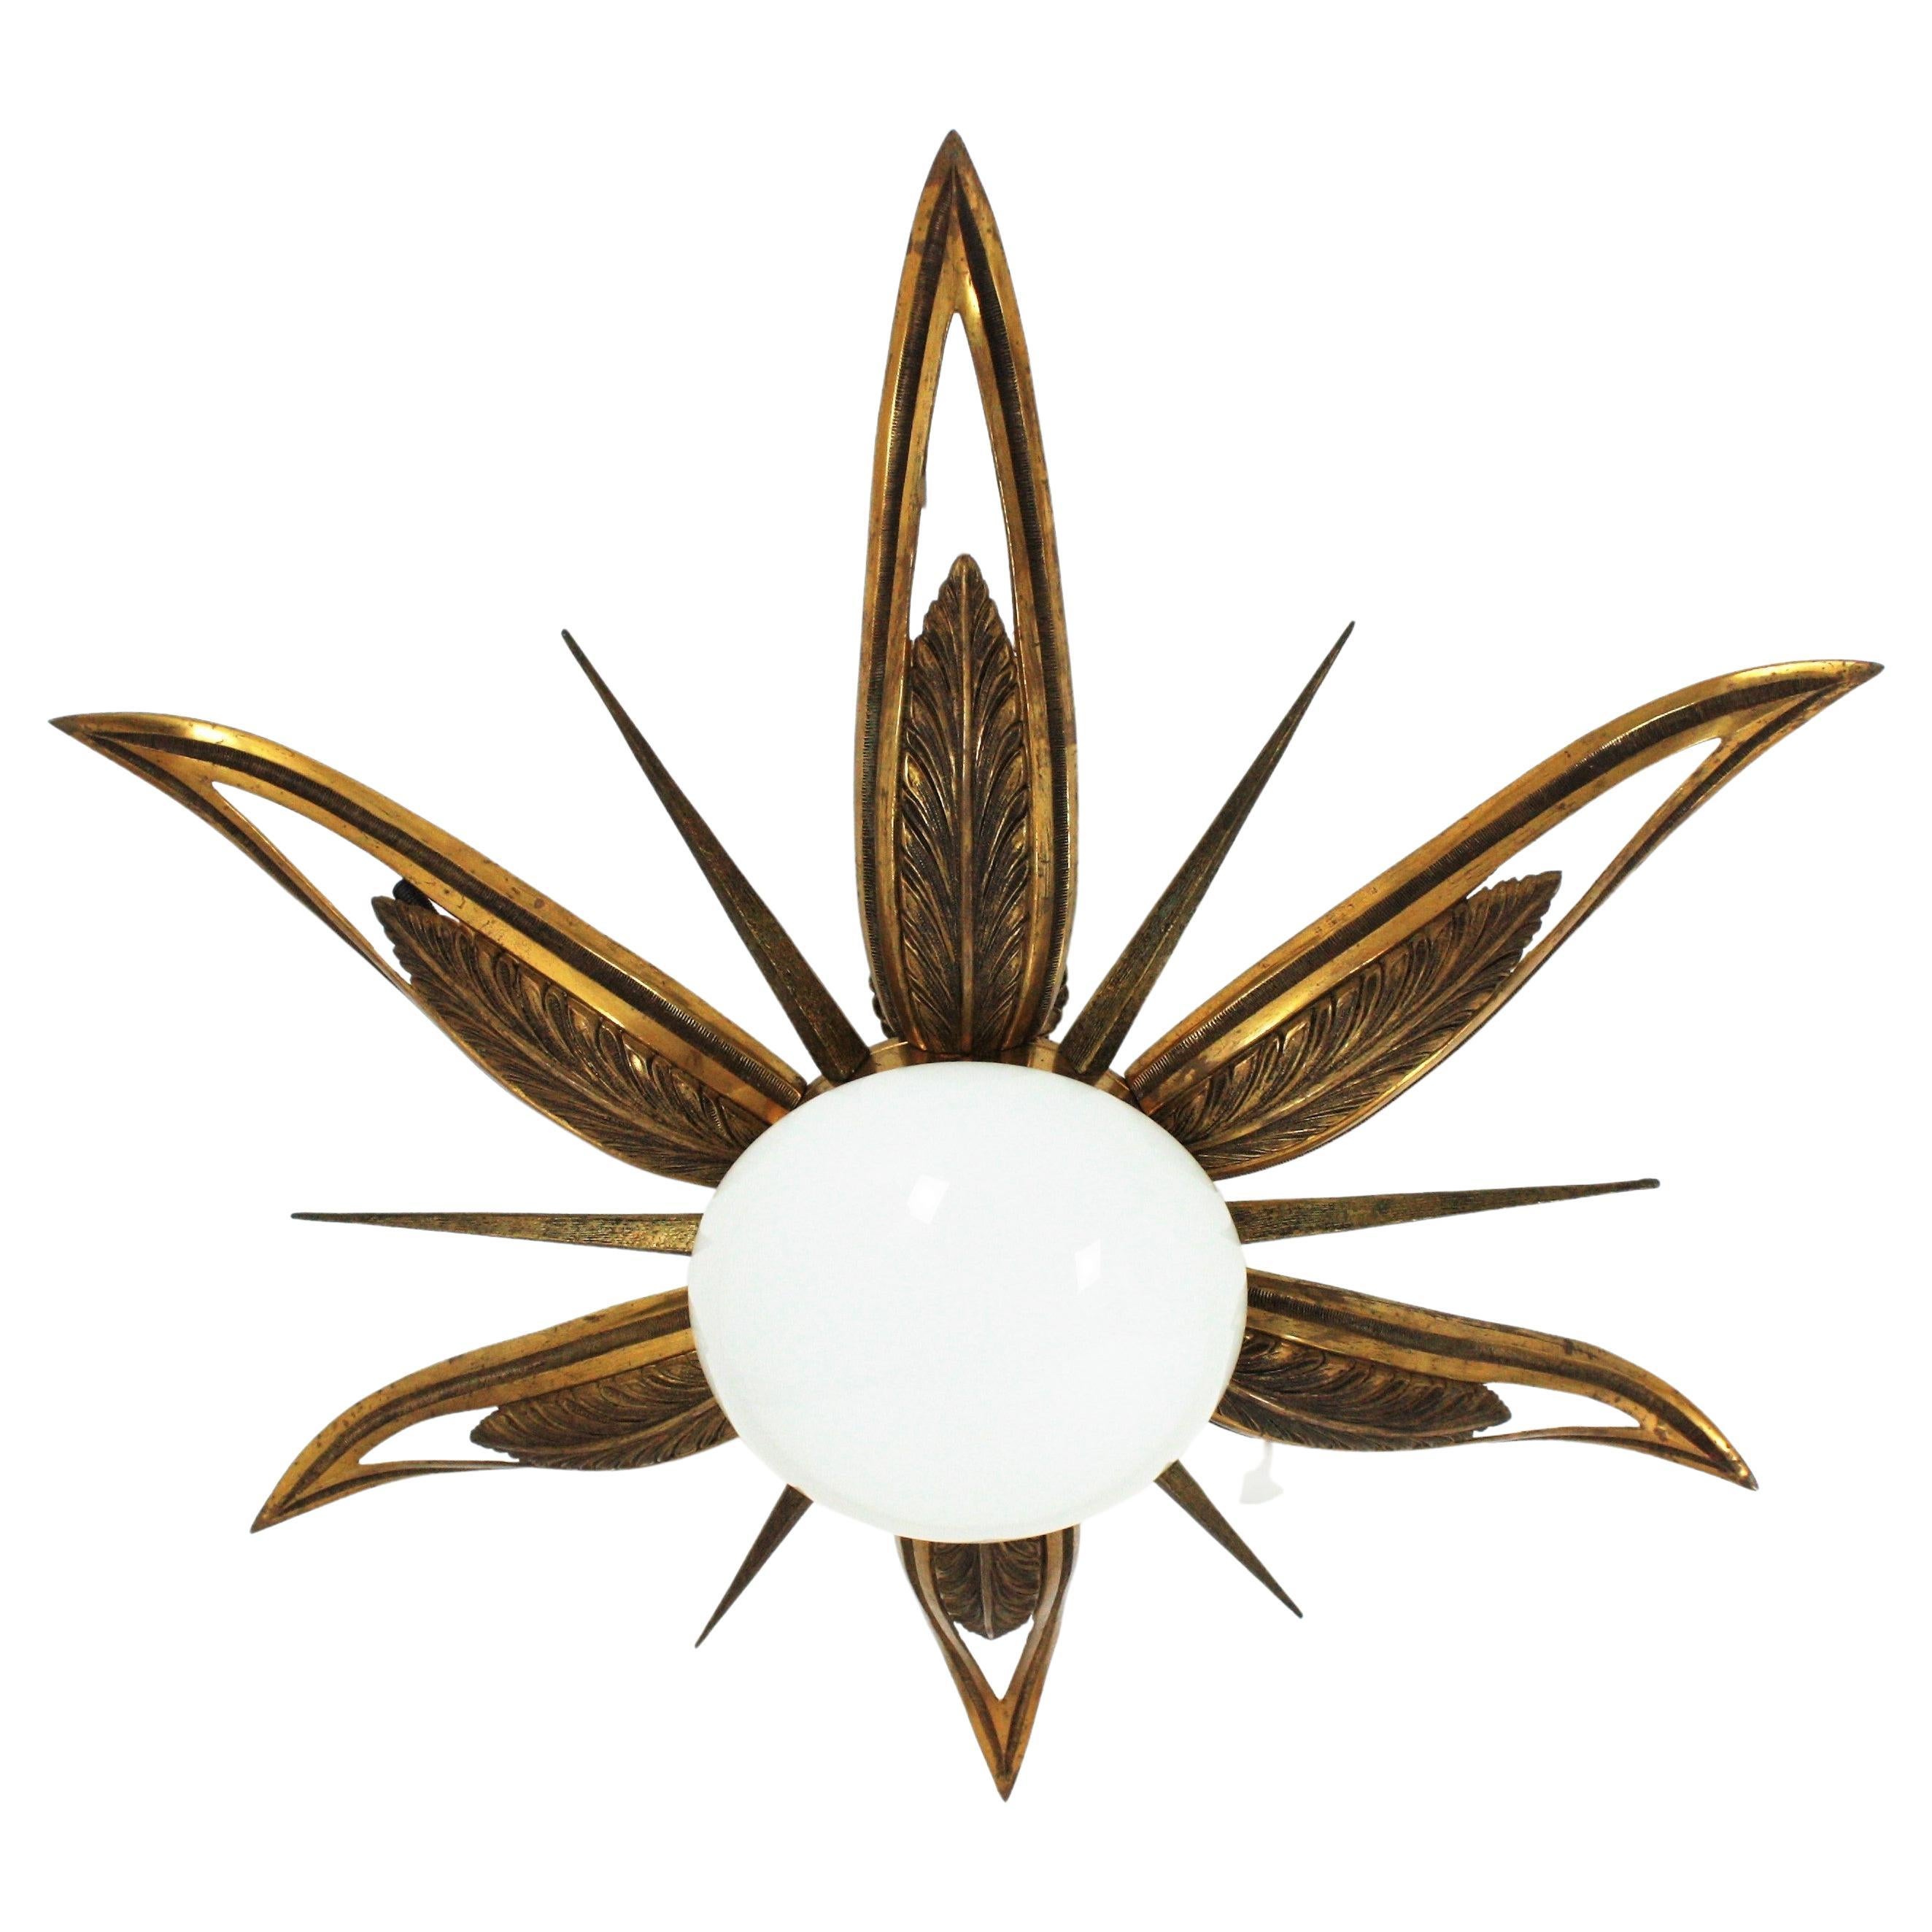 Außergewöhnliche Deckenlampe aus gravierter und gegossener Bronze in Form einer Art Deco-Sternpuppe, Frankreich, 1930er Jahre.
Diese flache Fassung zeigt einen Blumenausbruch oder Starburst mit 6 großen Blättern oder Strahlen, 6 spitzen kleineren